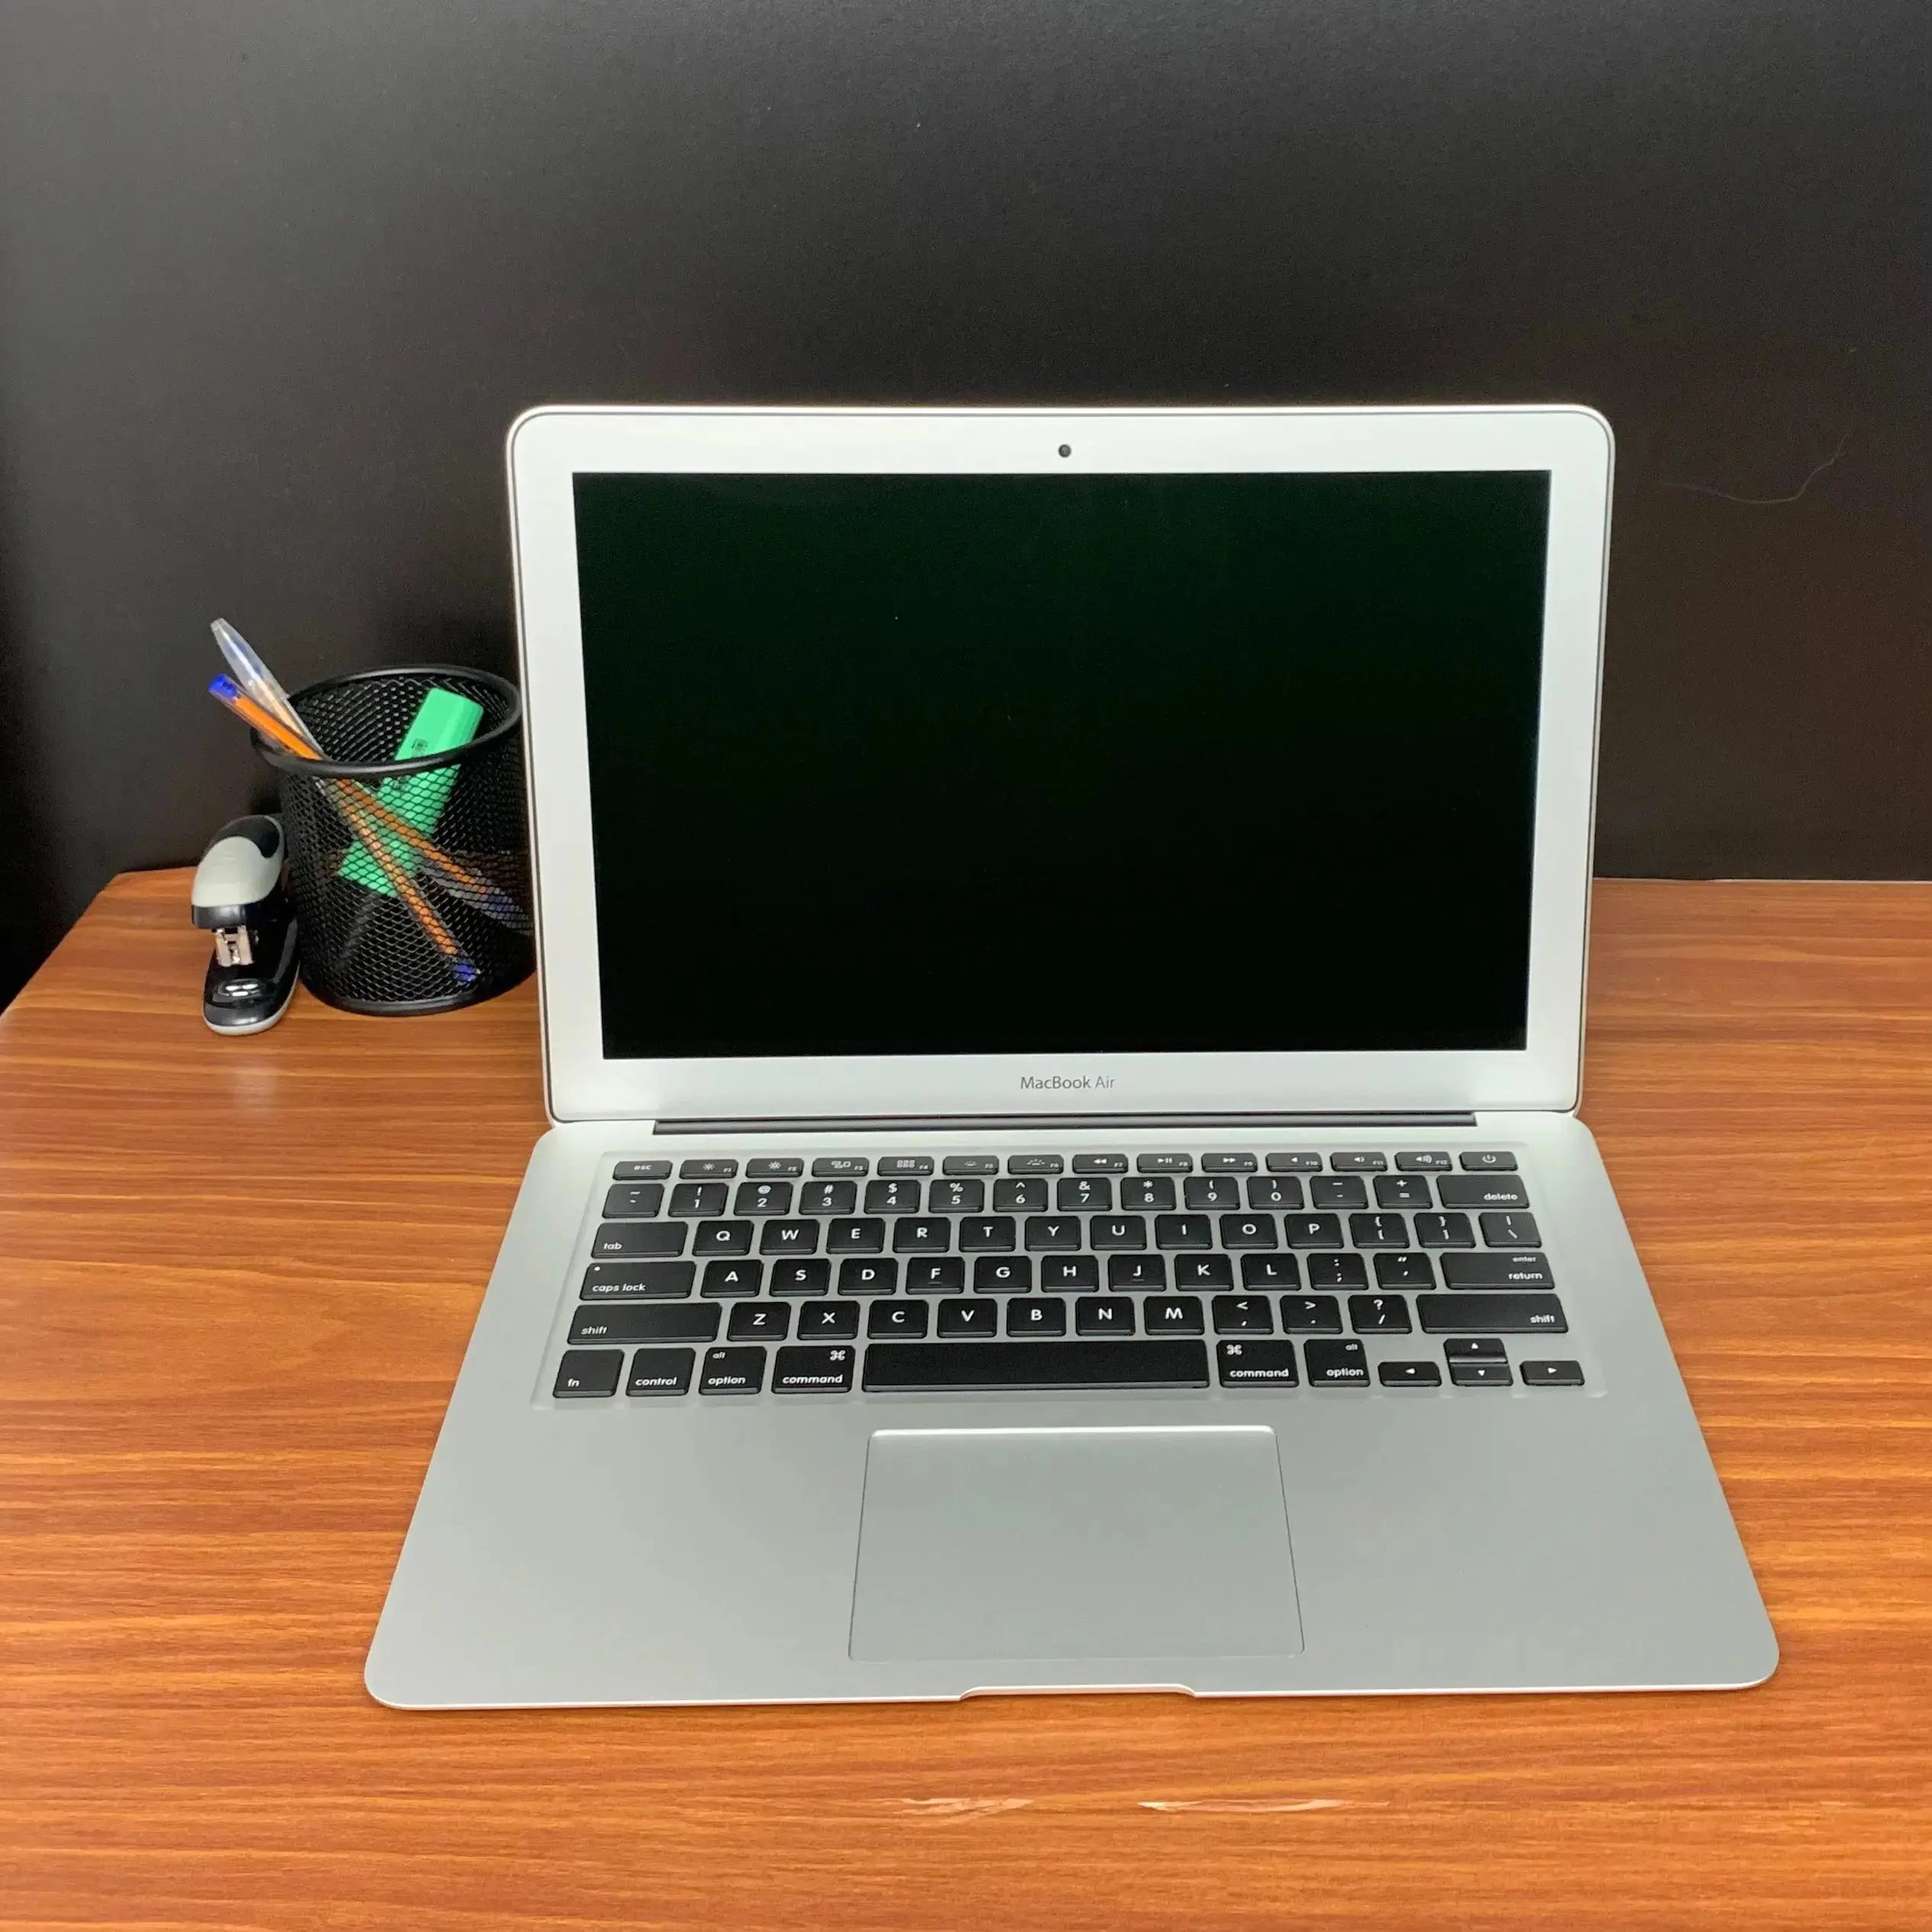 Comprar MacBook Air usado - Macbook Air 13 i5 2017 - TrocaTech Seminovos